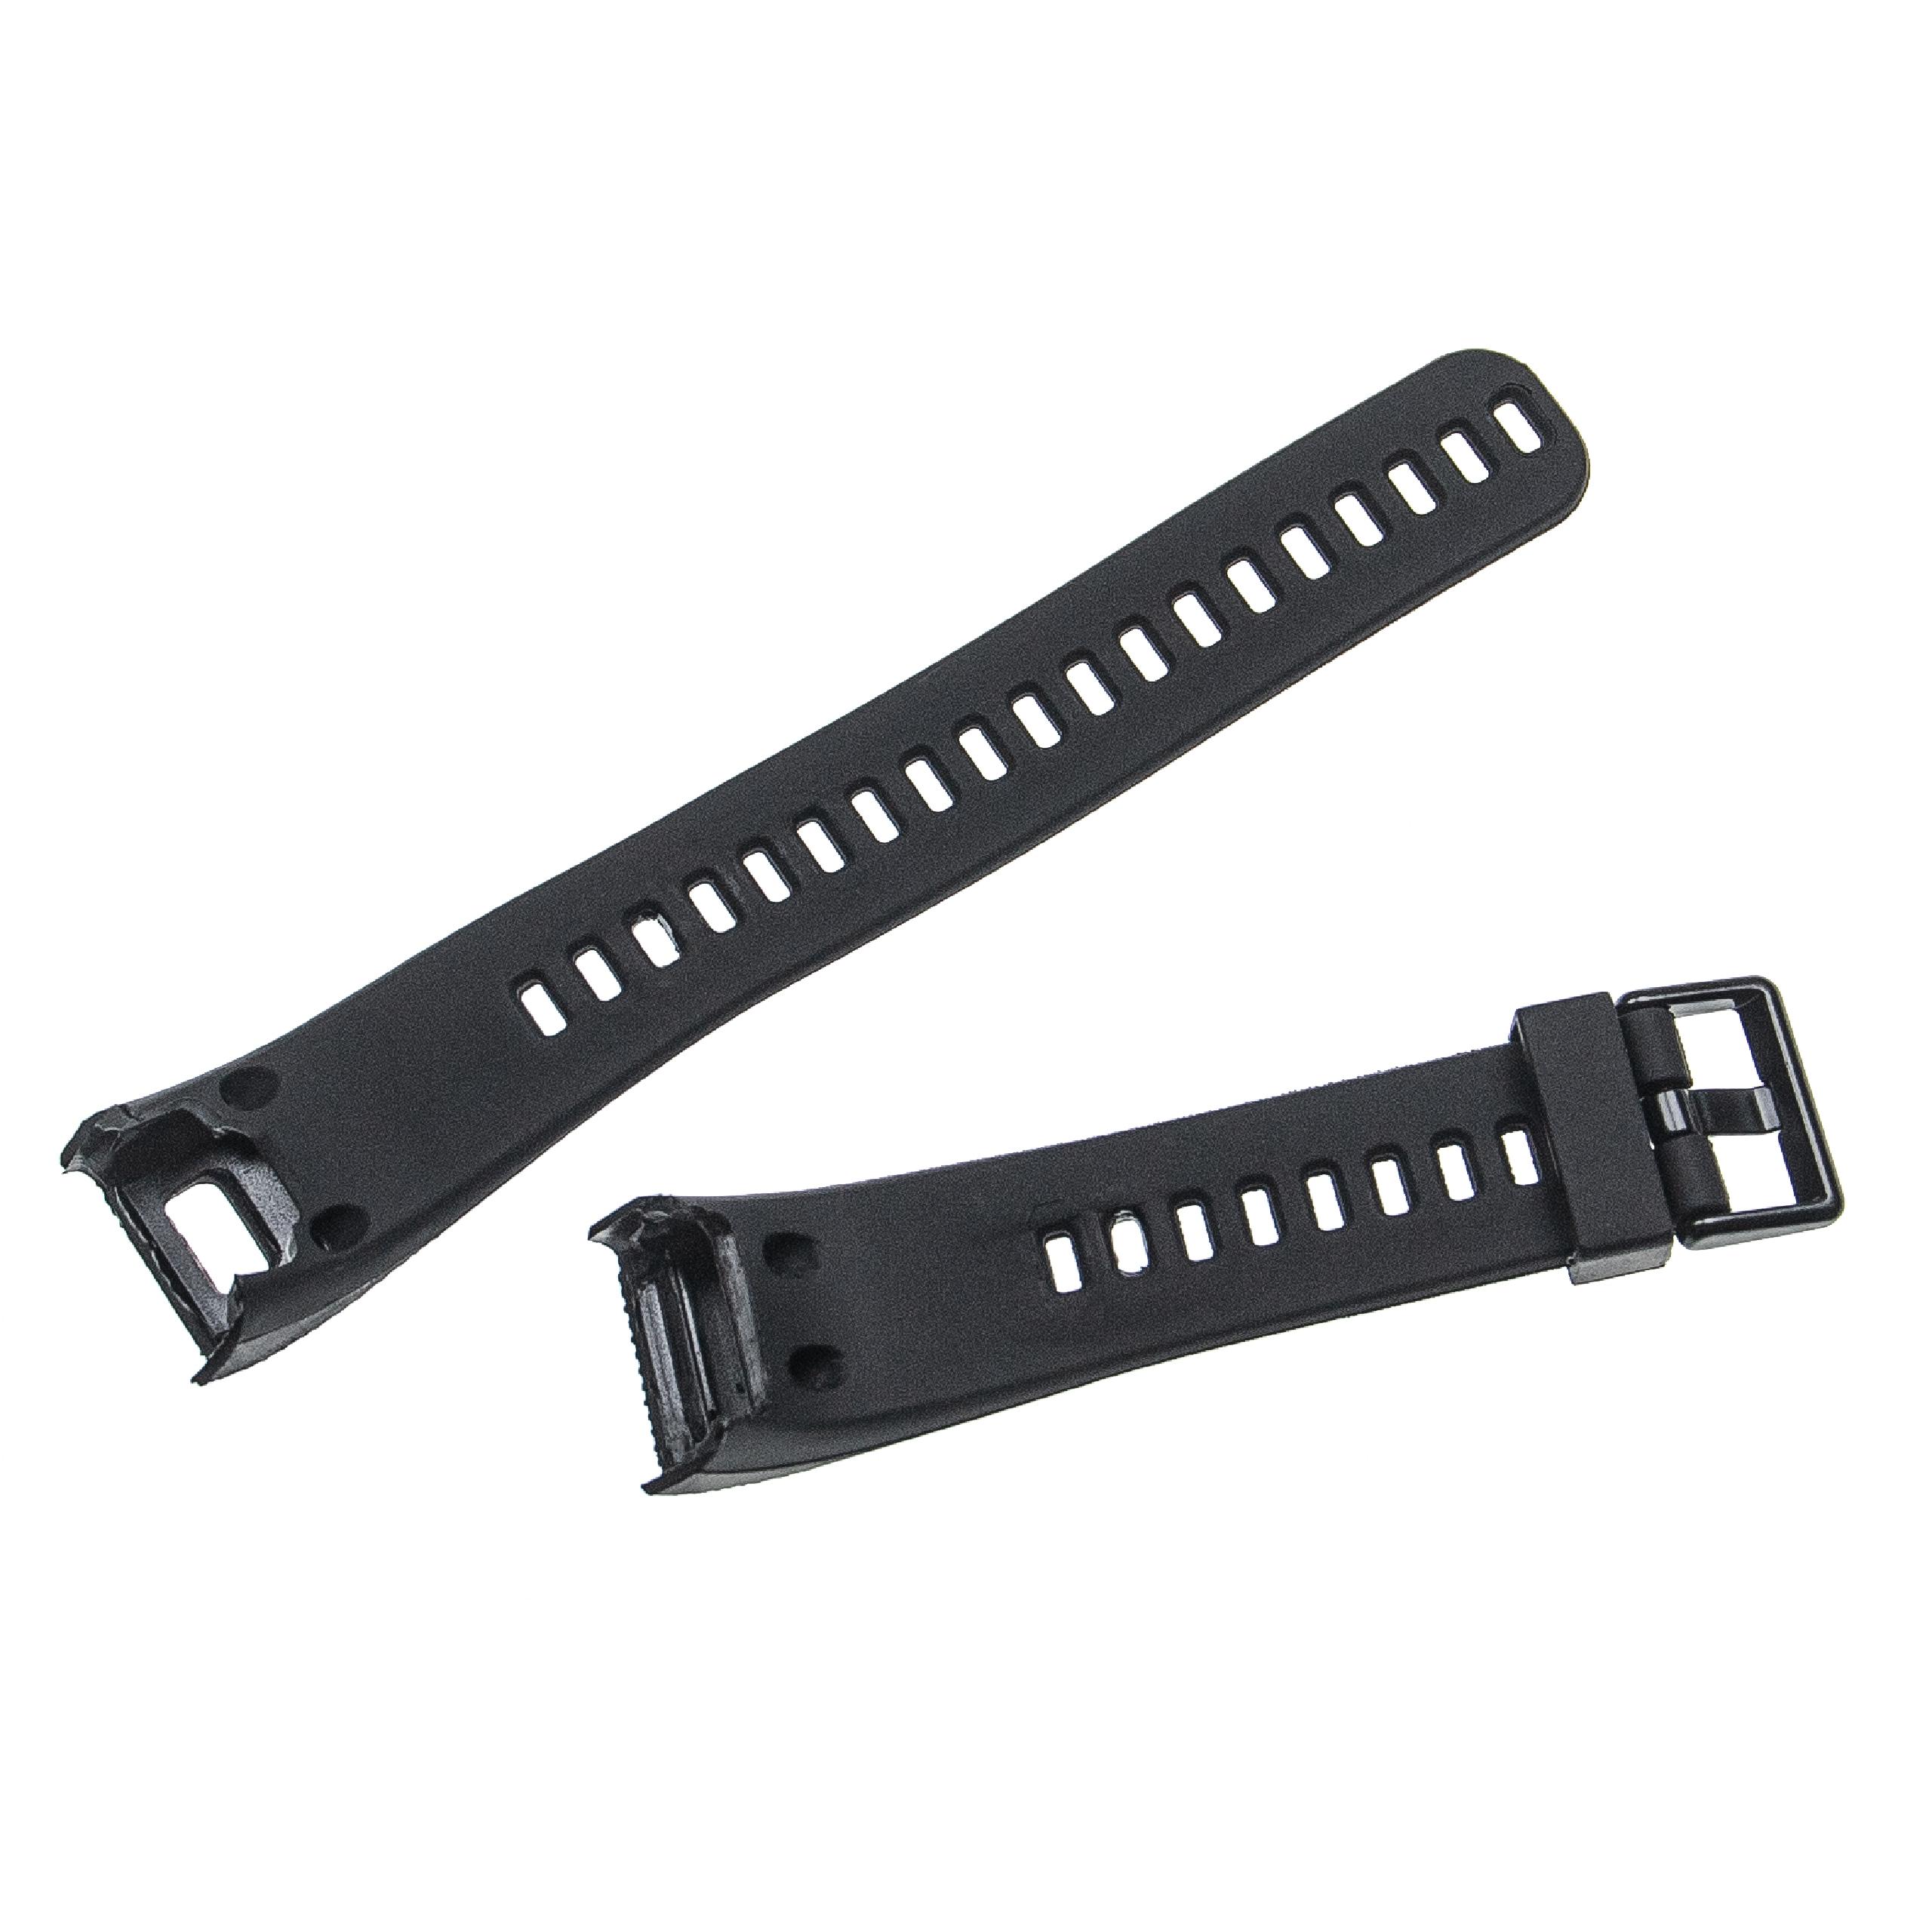 Bracelet pour montre intelligente Garmin Vivosmart - 12,7 + 8,8 cm de long, 20mm de large, TPU, noir